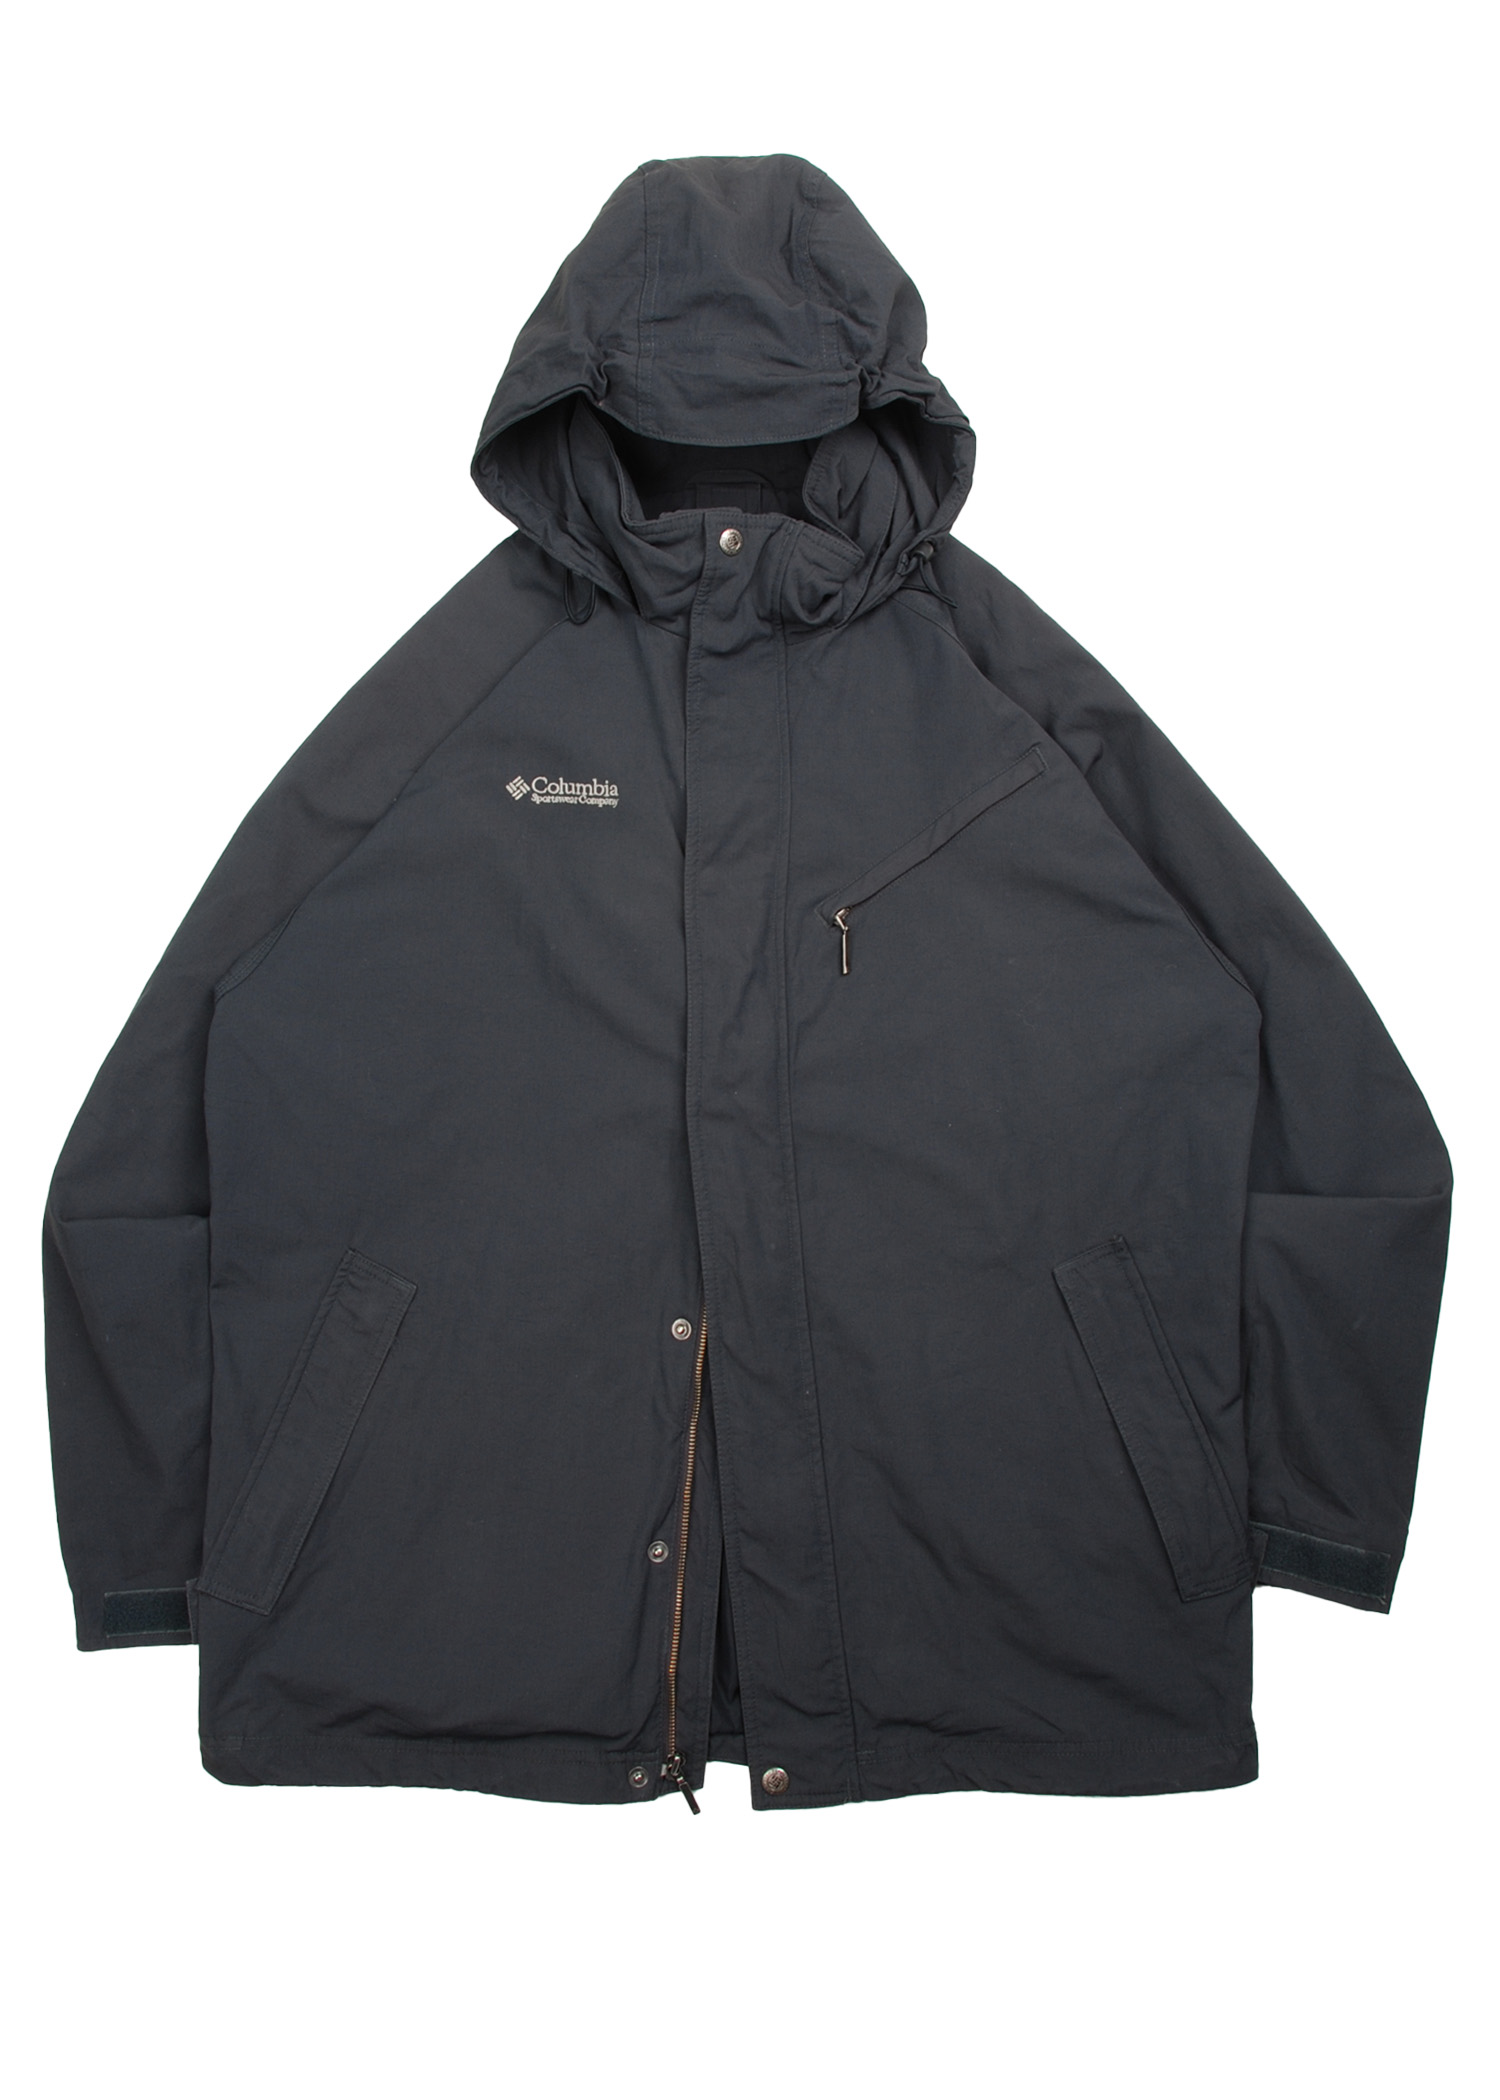 Cloumbia Sportswear Company  Windbreaker jacket